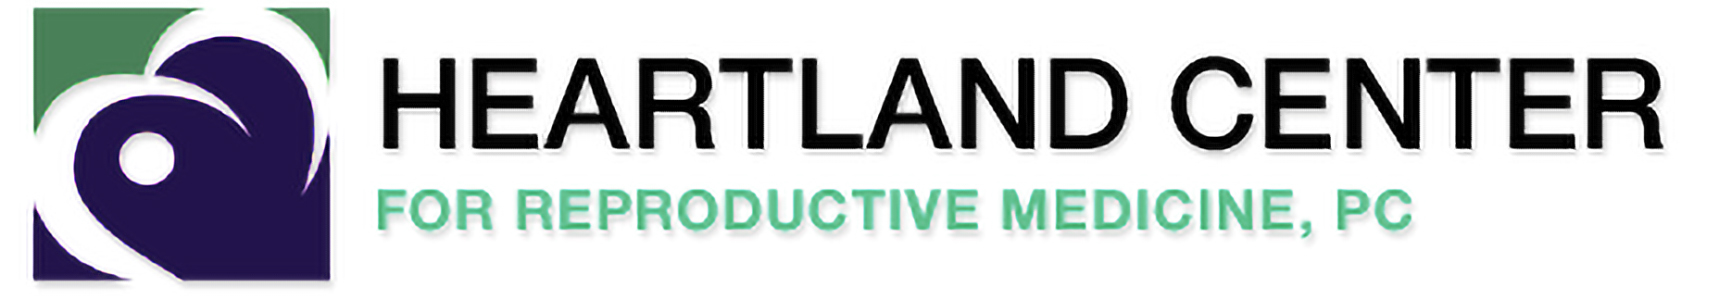 heartland center for reproductive health logo